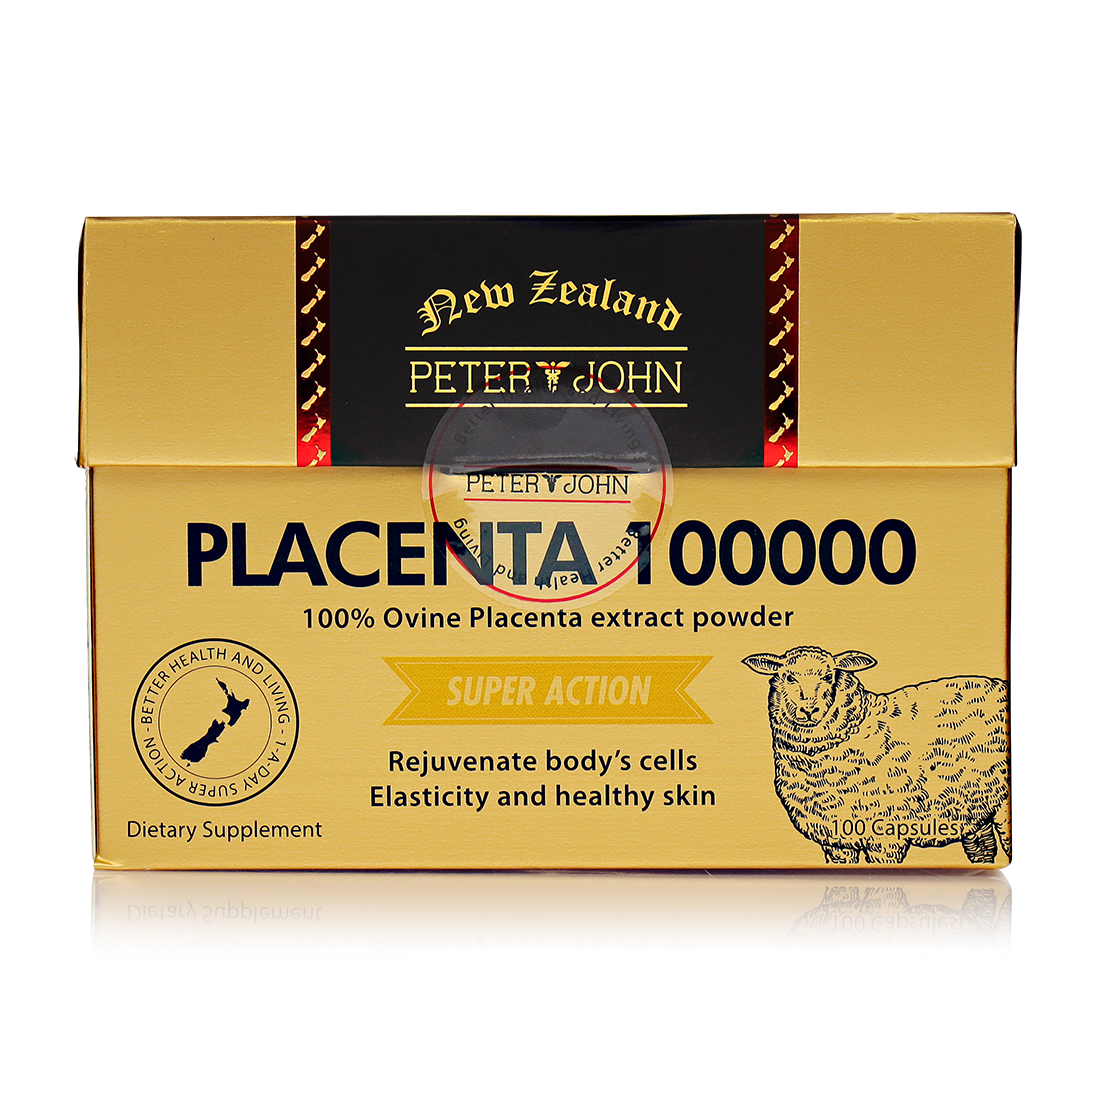 양태반 분말 플라센타 뉴질랜드 양태반캡슐 피터앤존 100000 60정